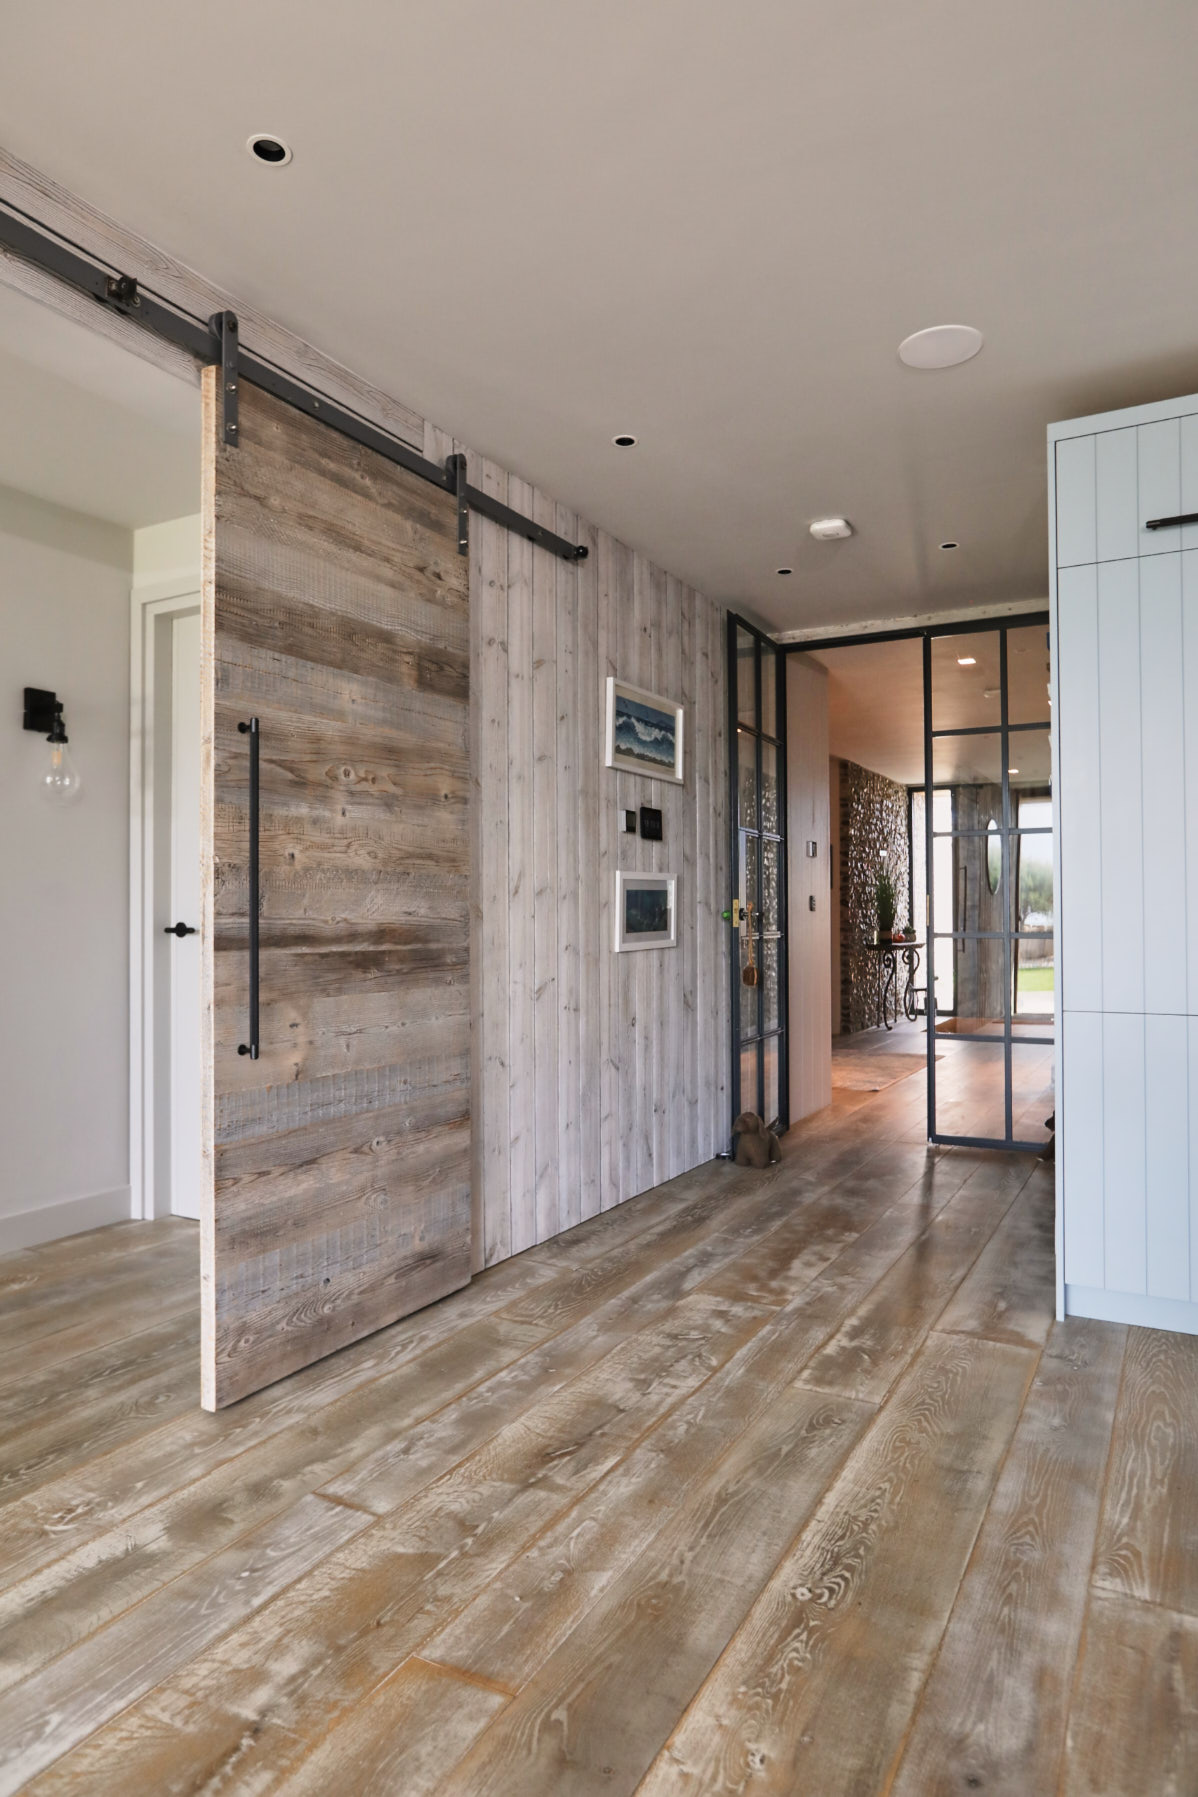 Open barn door with wooden flooring